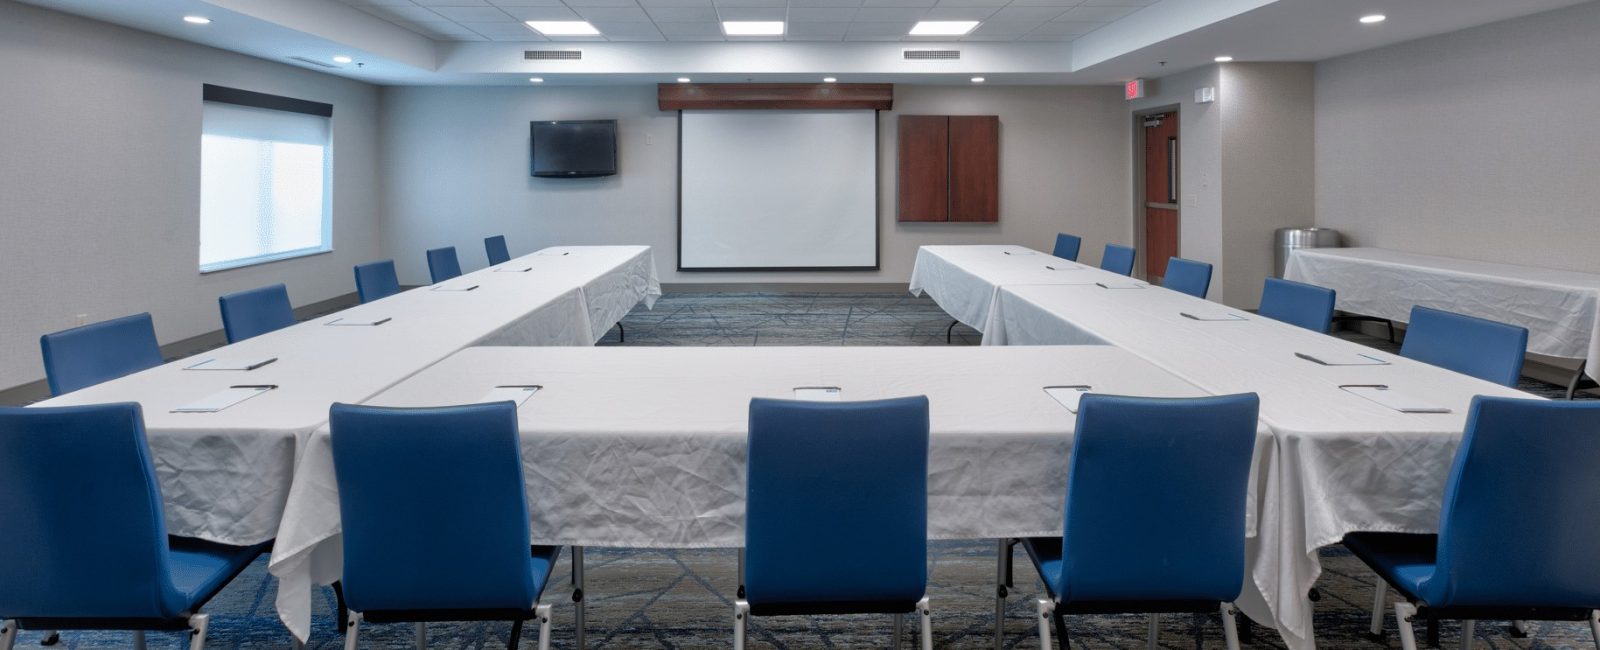 Meeting Room-U-Shape